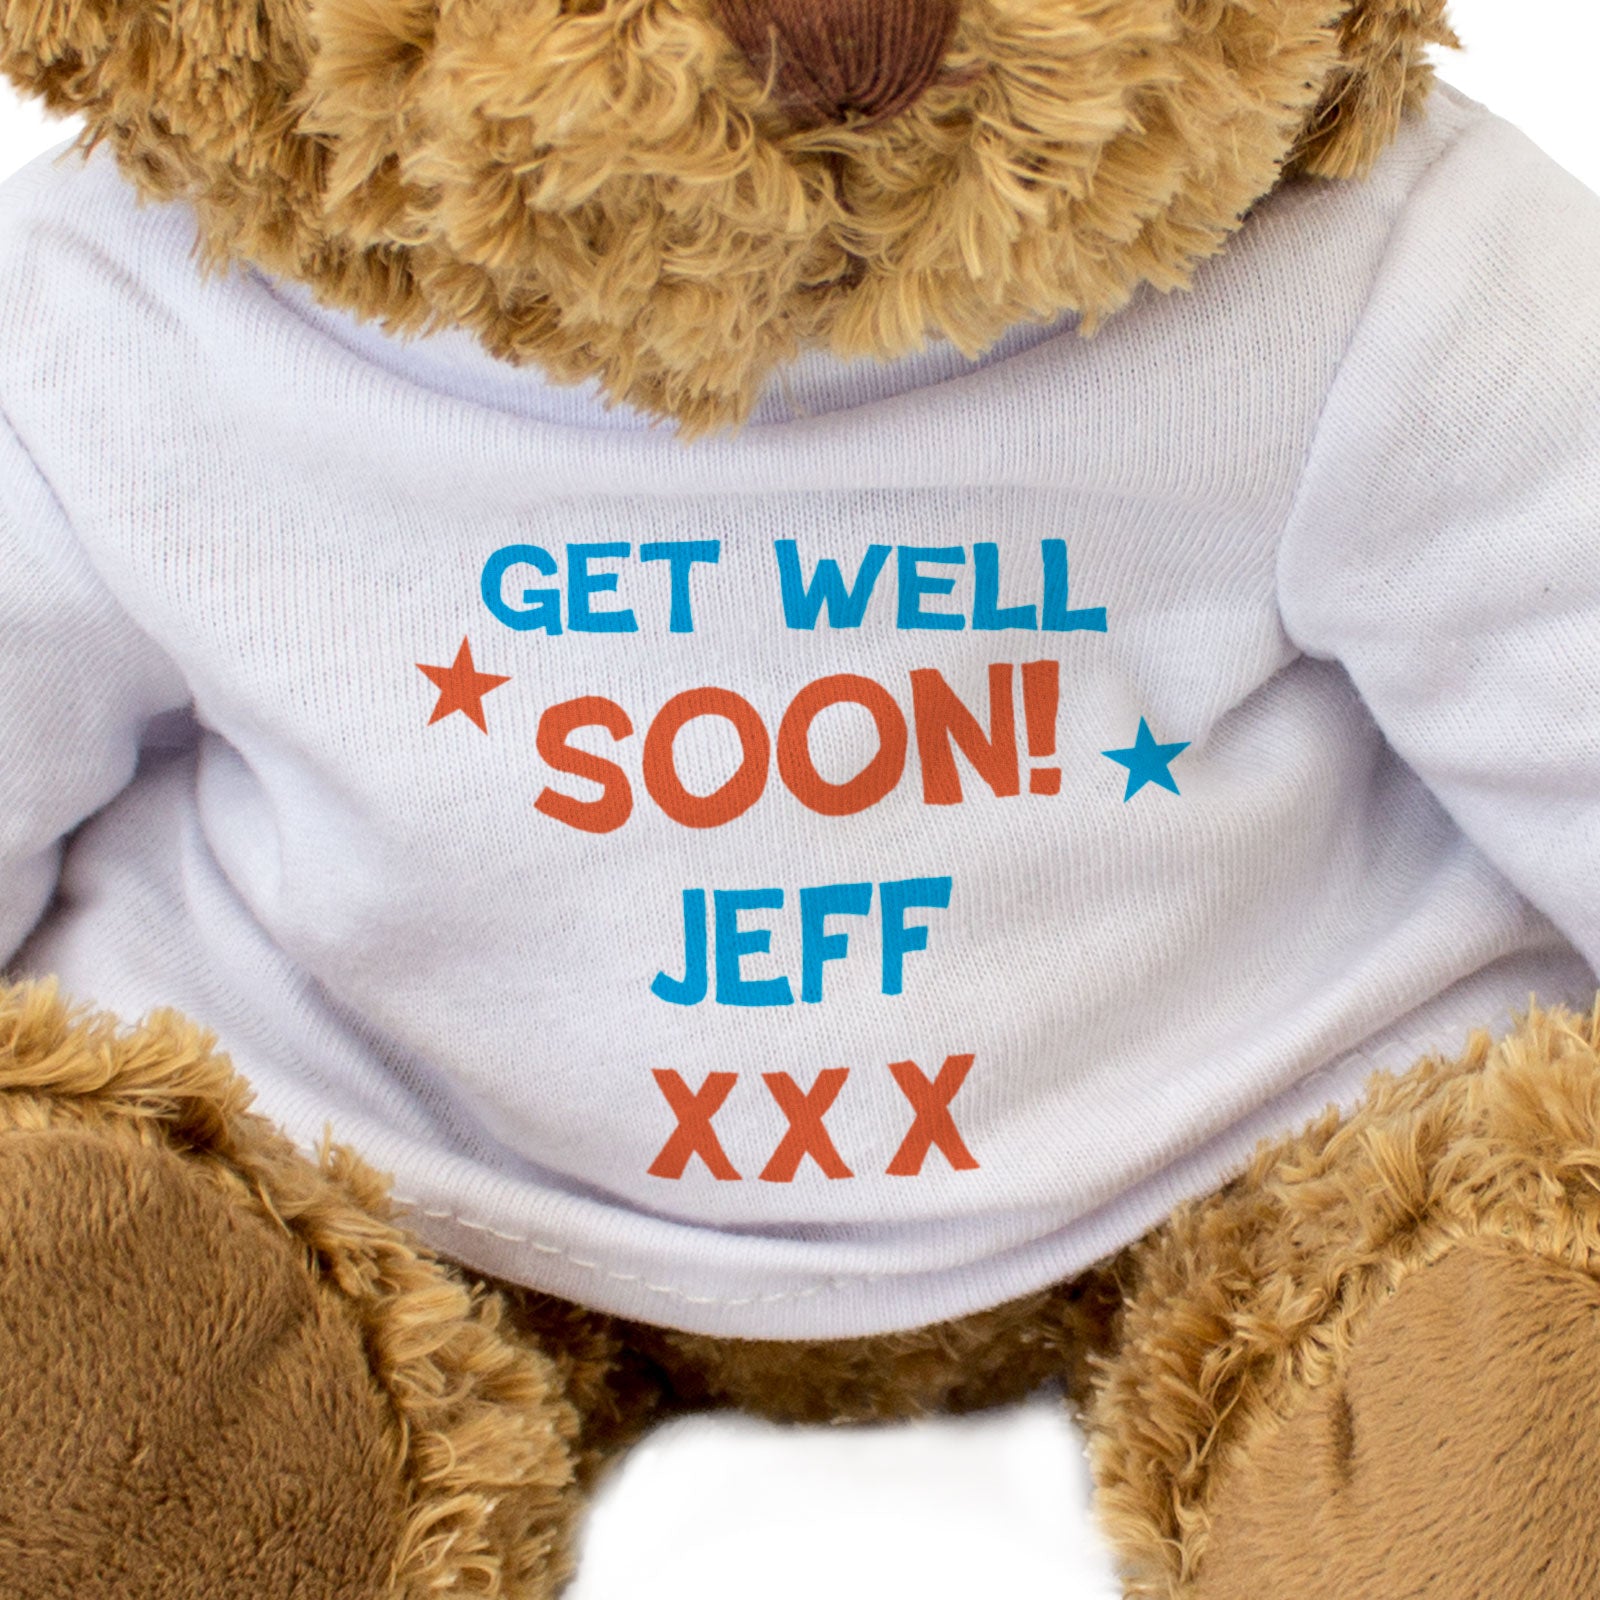 Get Well Soon Jeff - Teddy Bear